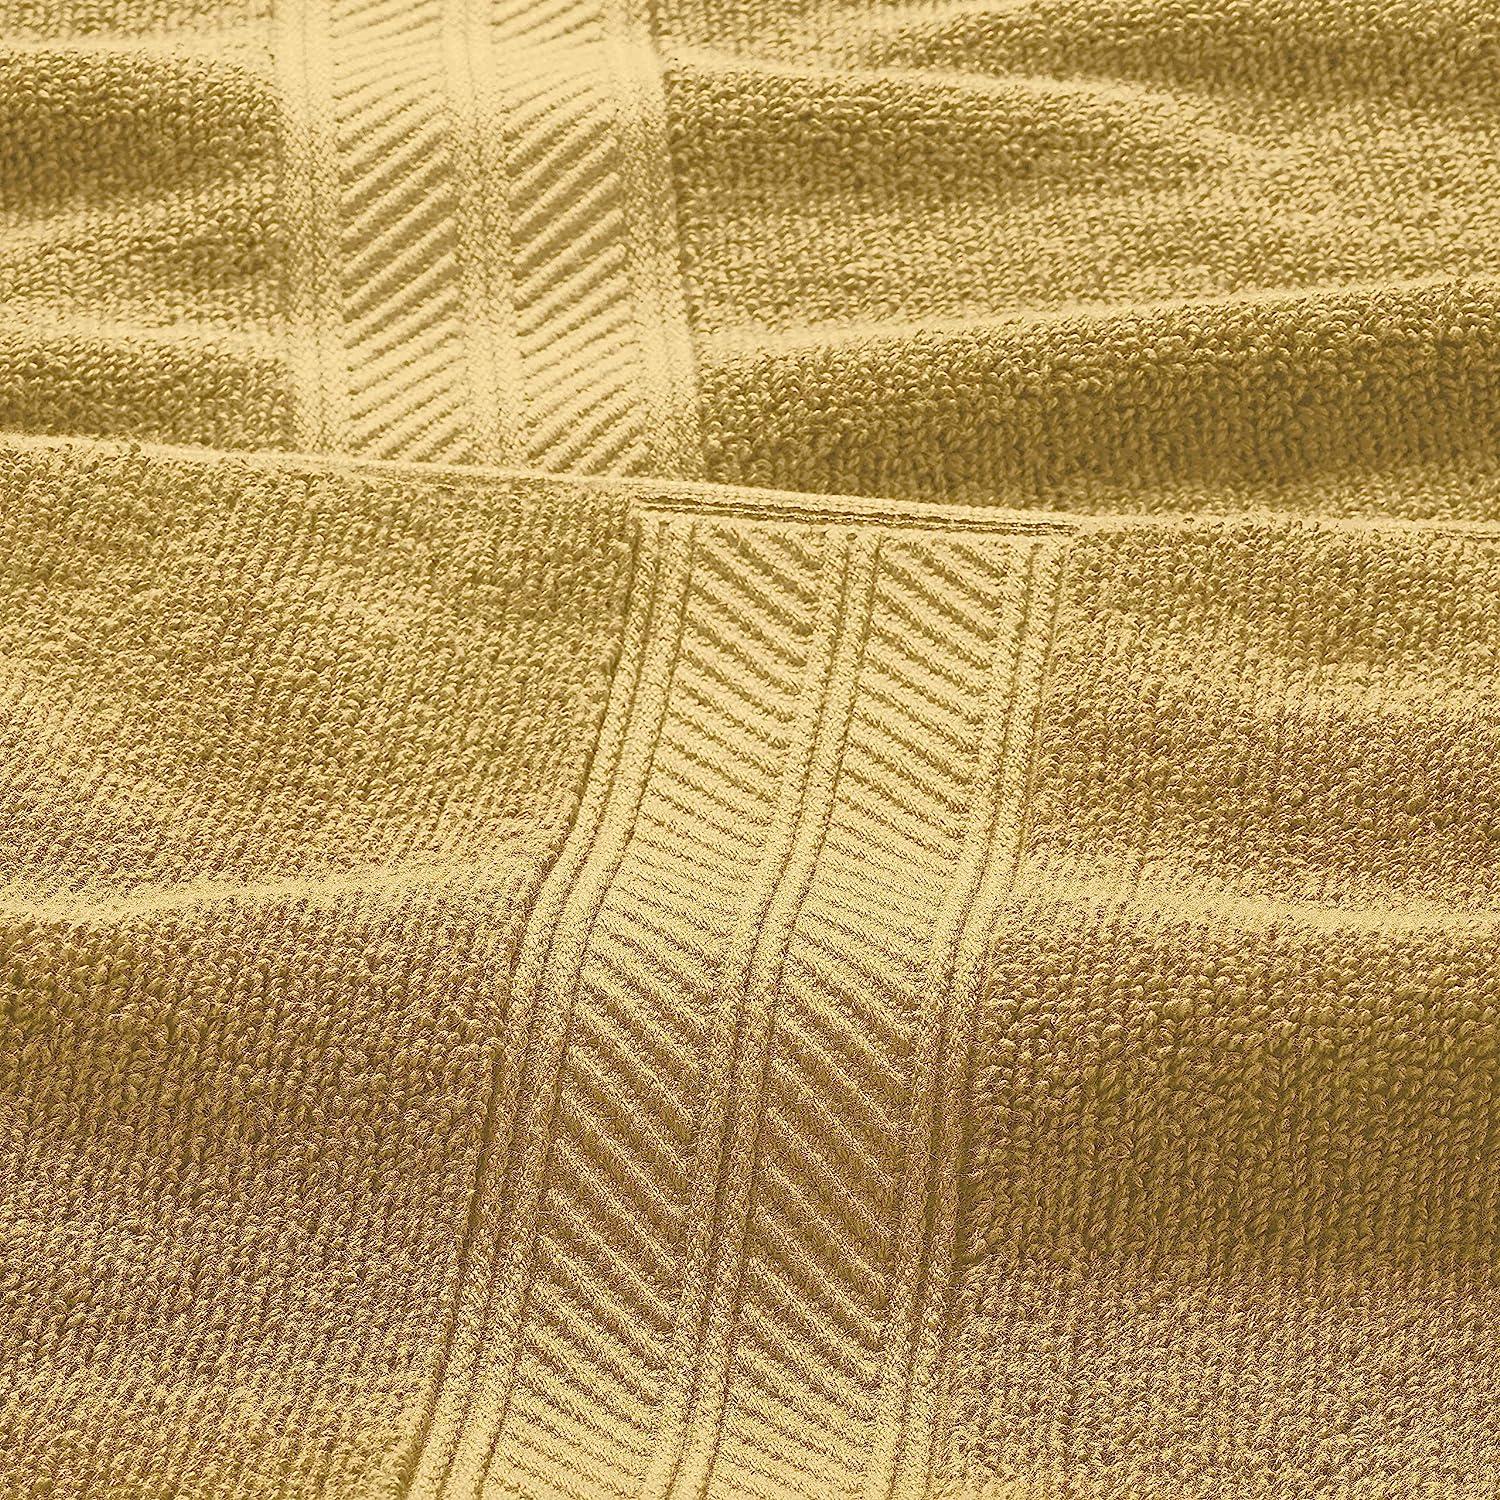 Super Soft Cotton Quick Dry Bath Towel 6 Piece Set Yellow